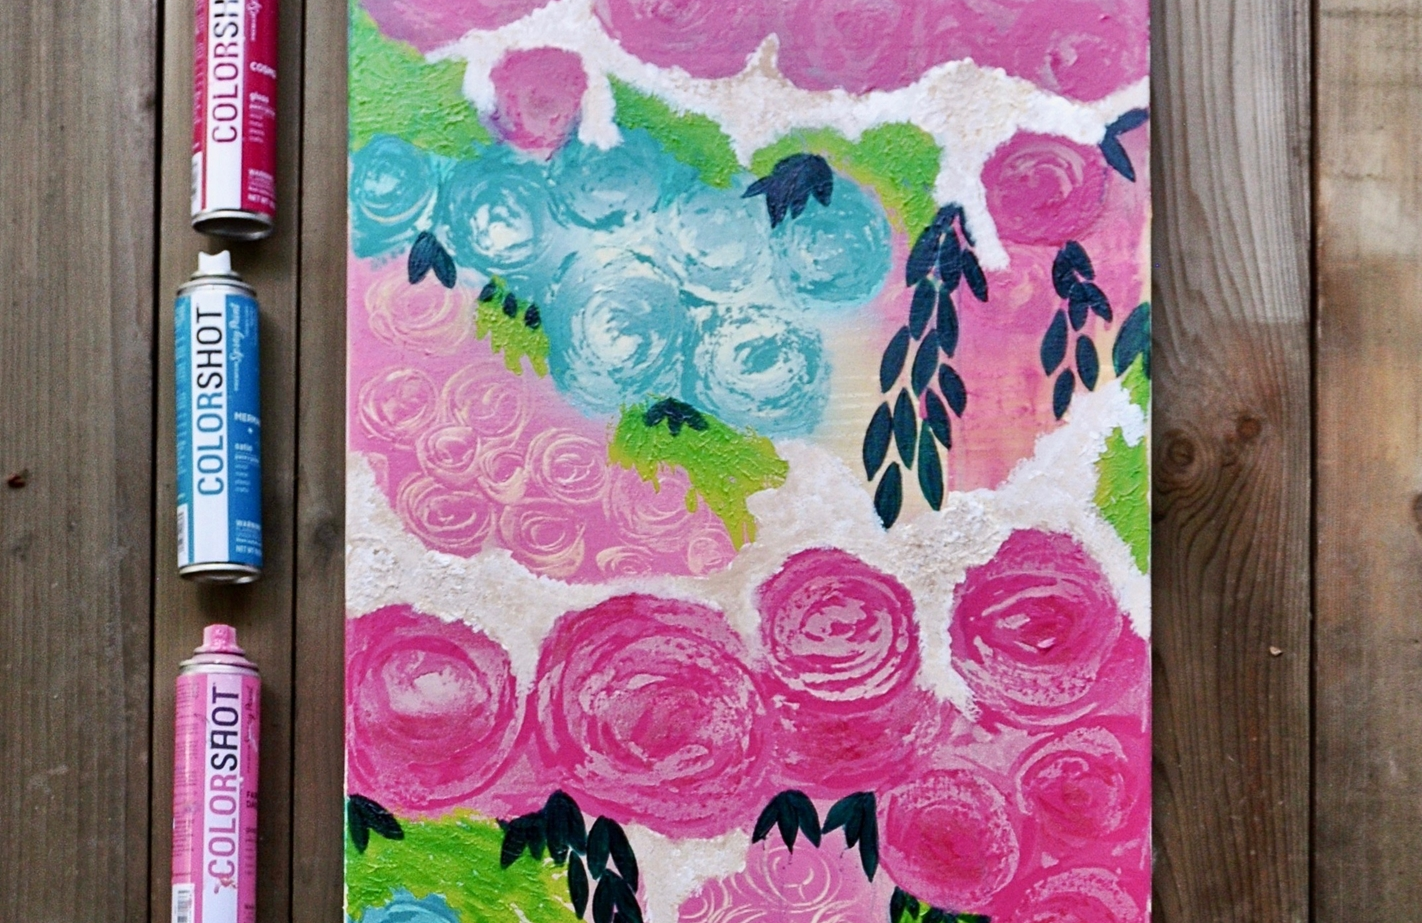 COLORSHOT Floral Print Spray Paint Art